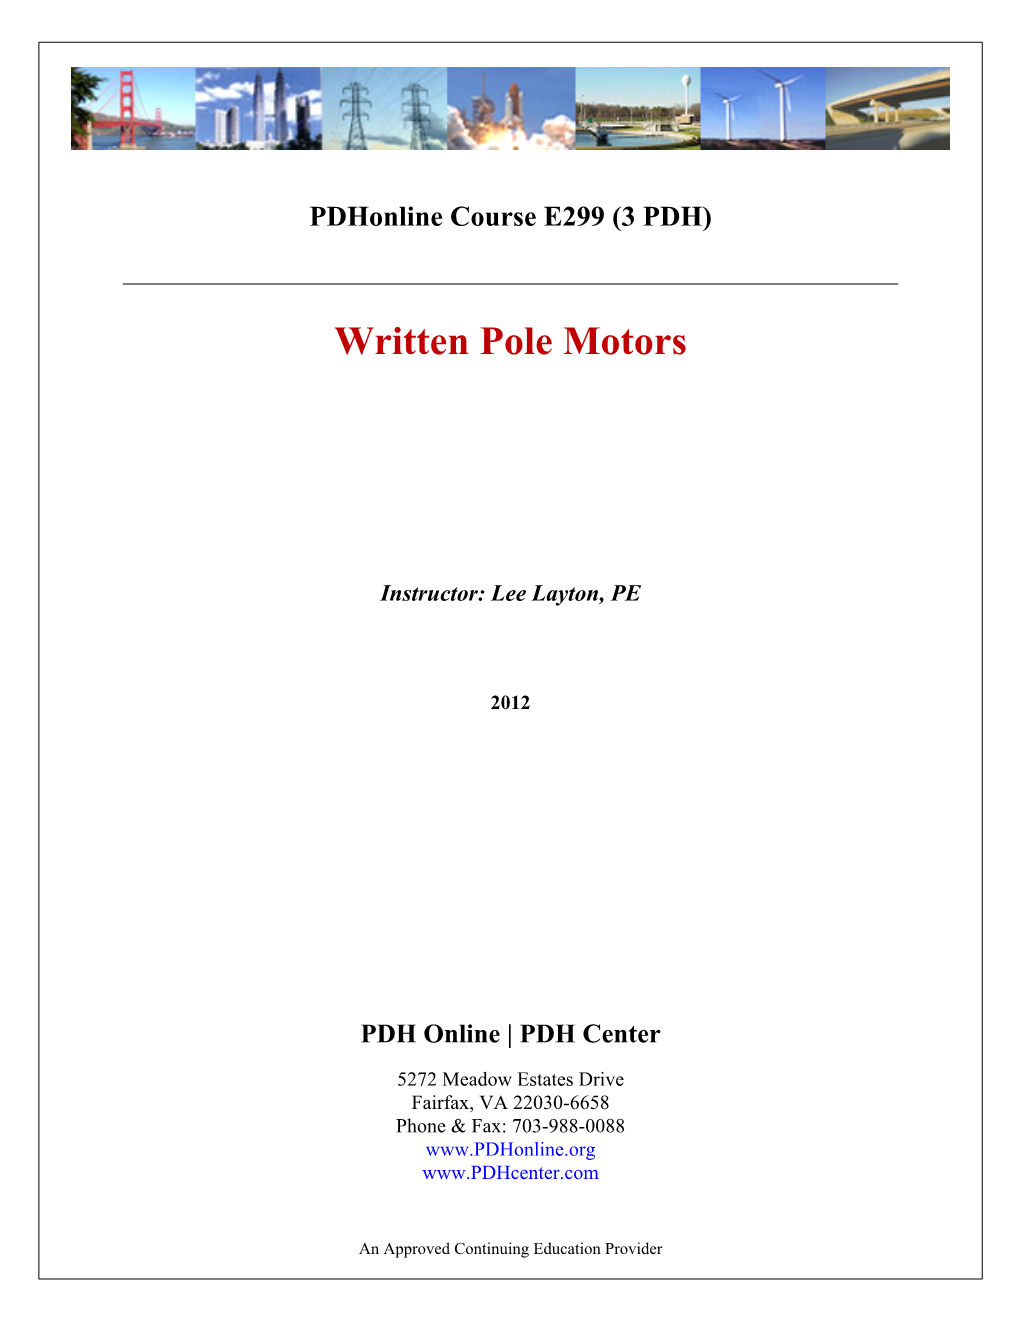 Written Pole Motors